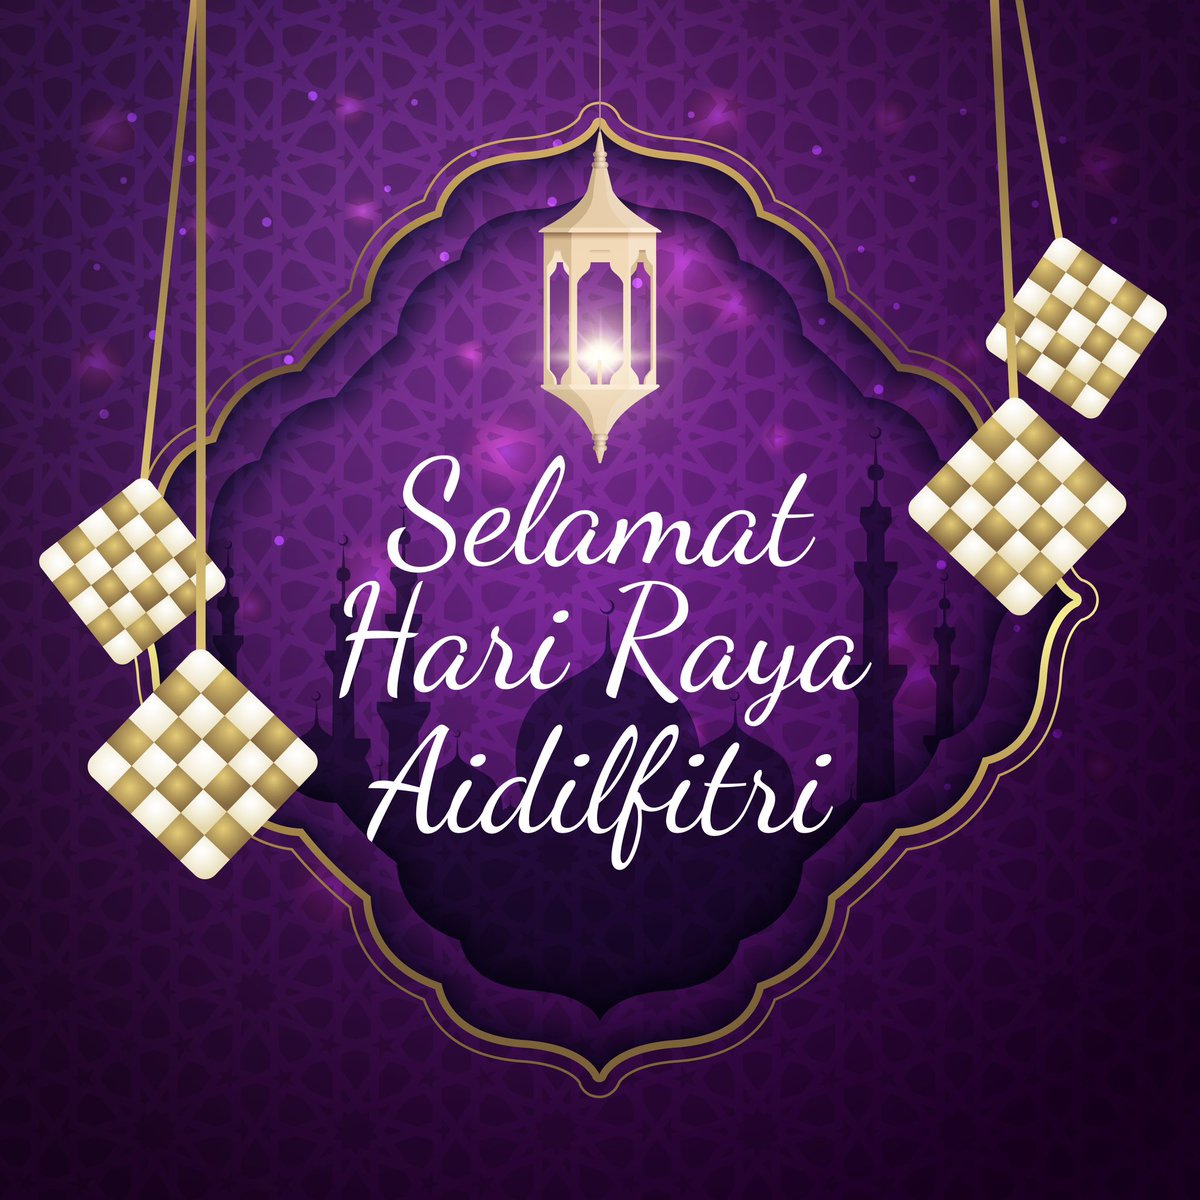 Selamat Hari Raya Puasa to all Muslim residents.